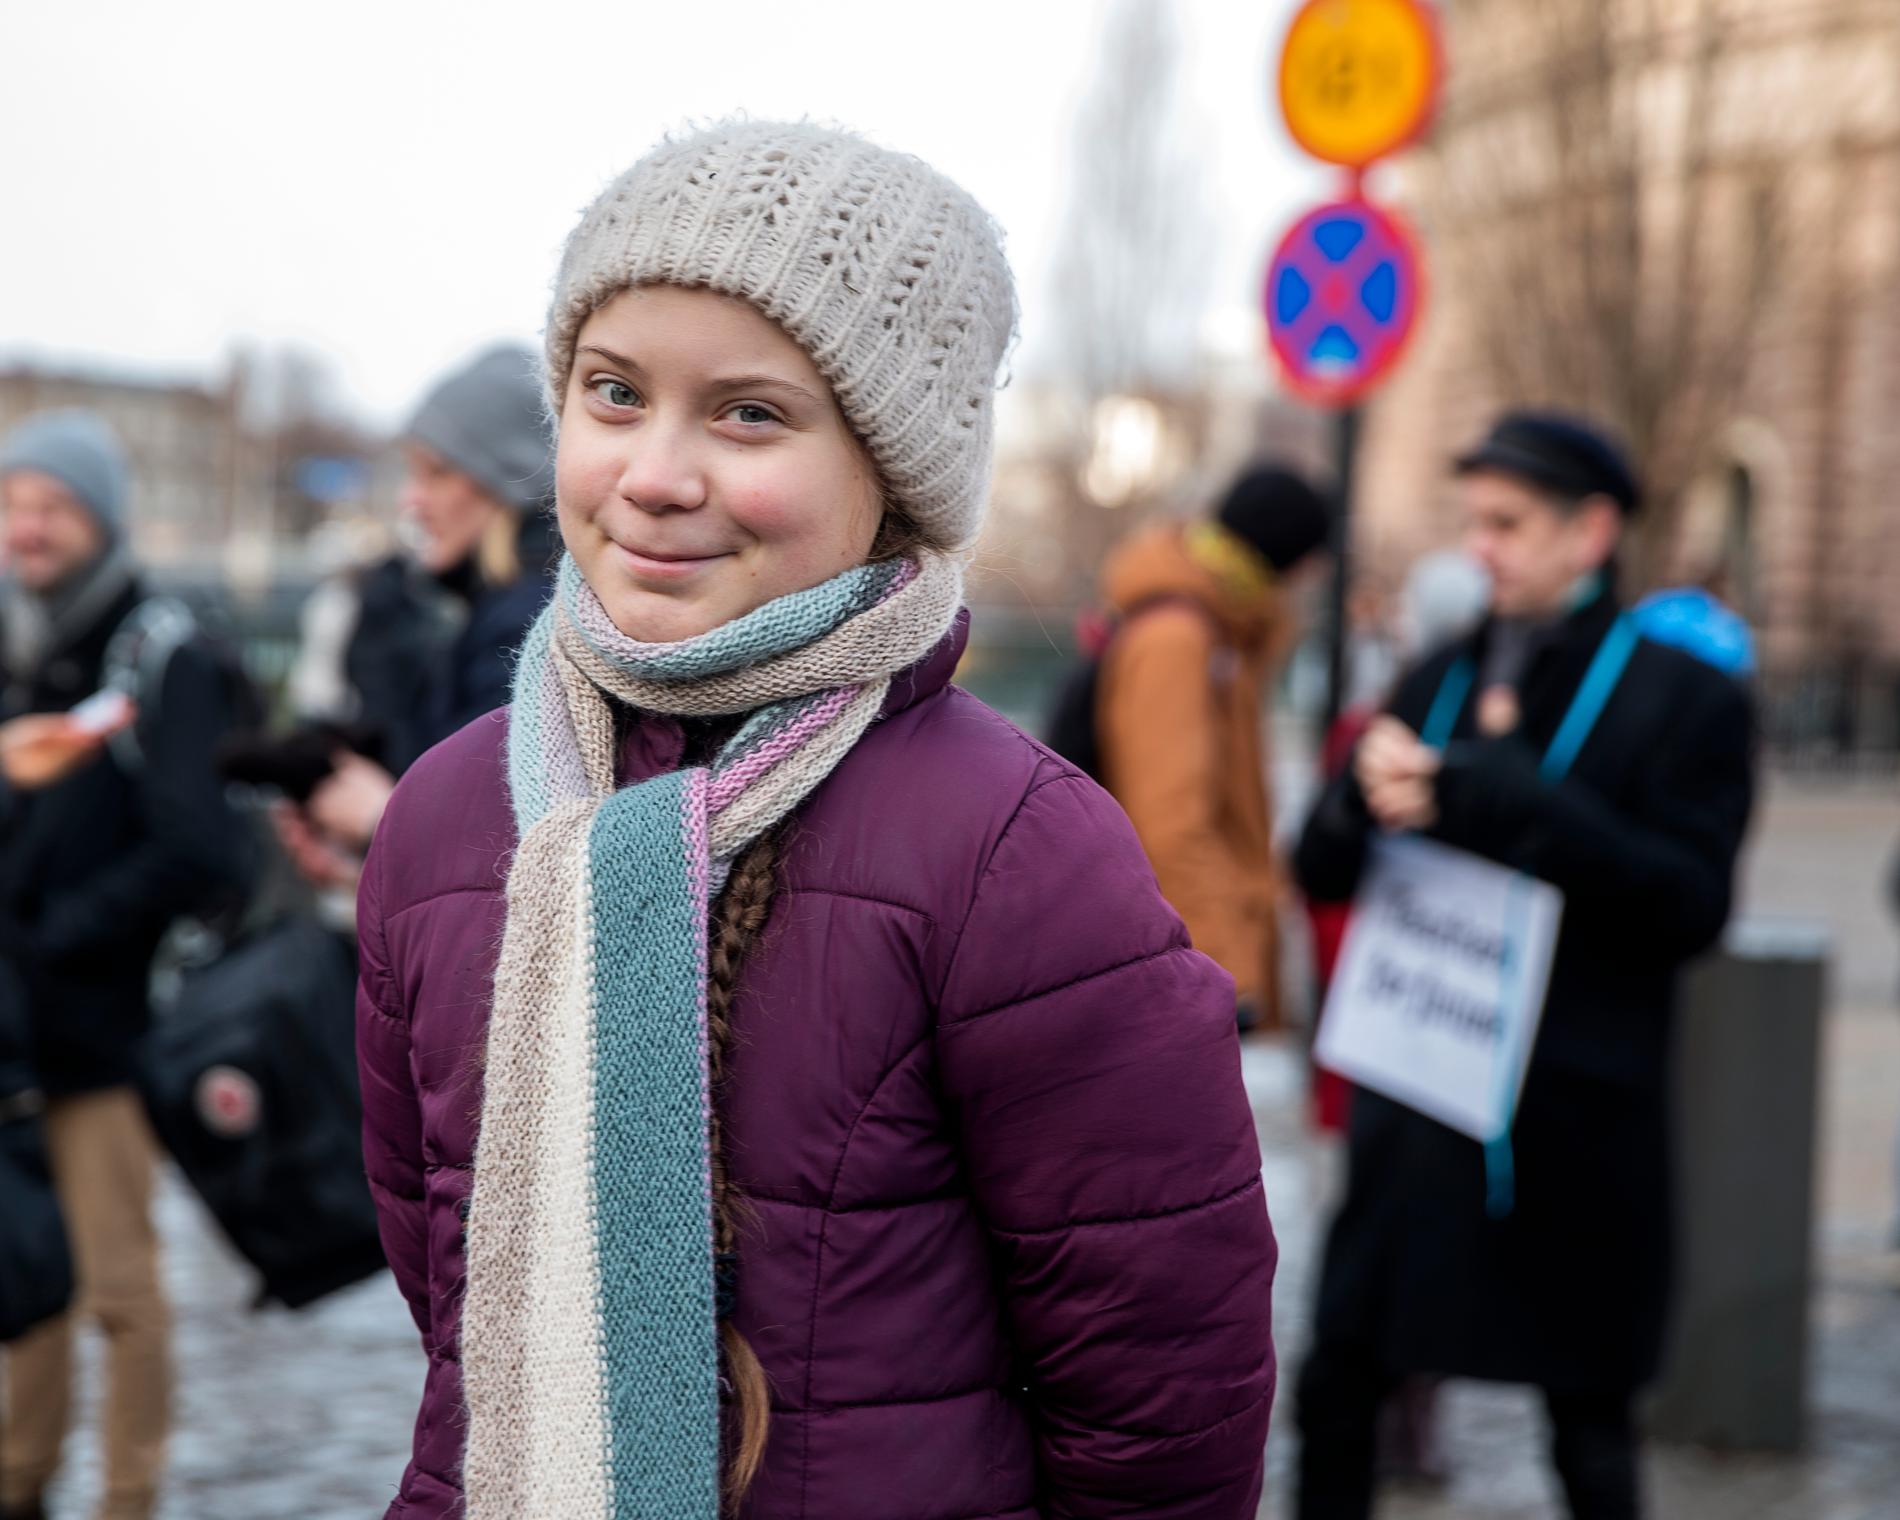 15-åriga Greta Thunberg satte sig ensam med en skylt utanför Sveriges riksdag – ett halvår senare skolstrejkar tusentals ungdomar världen över för klimatet.